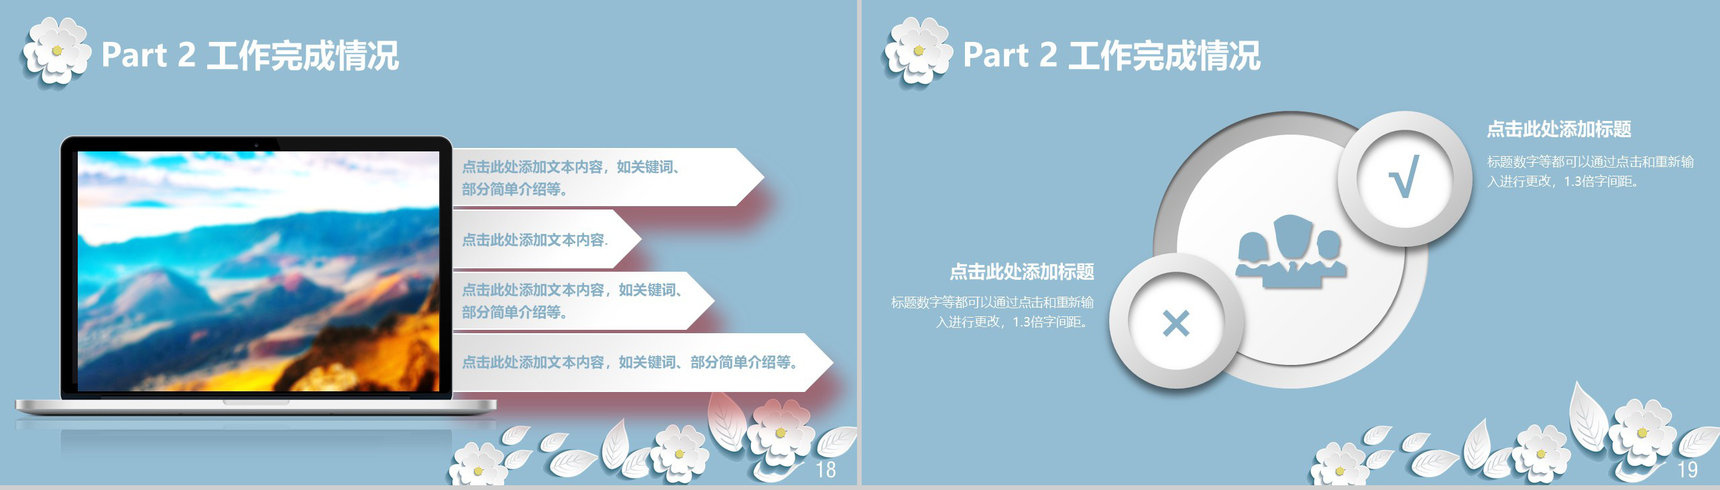 清新简约中国风商务工作总结汇报PPT模板-10